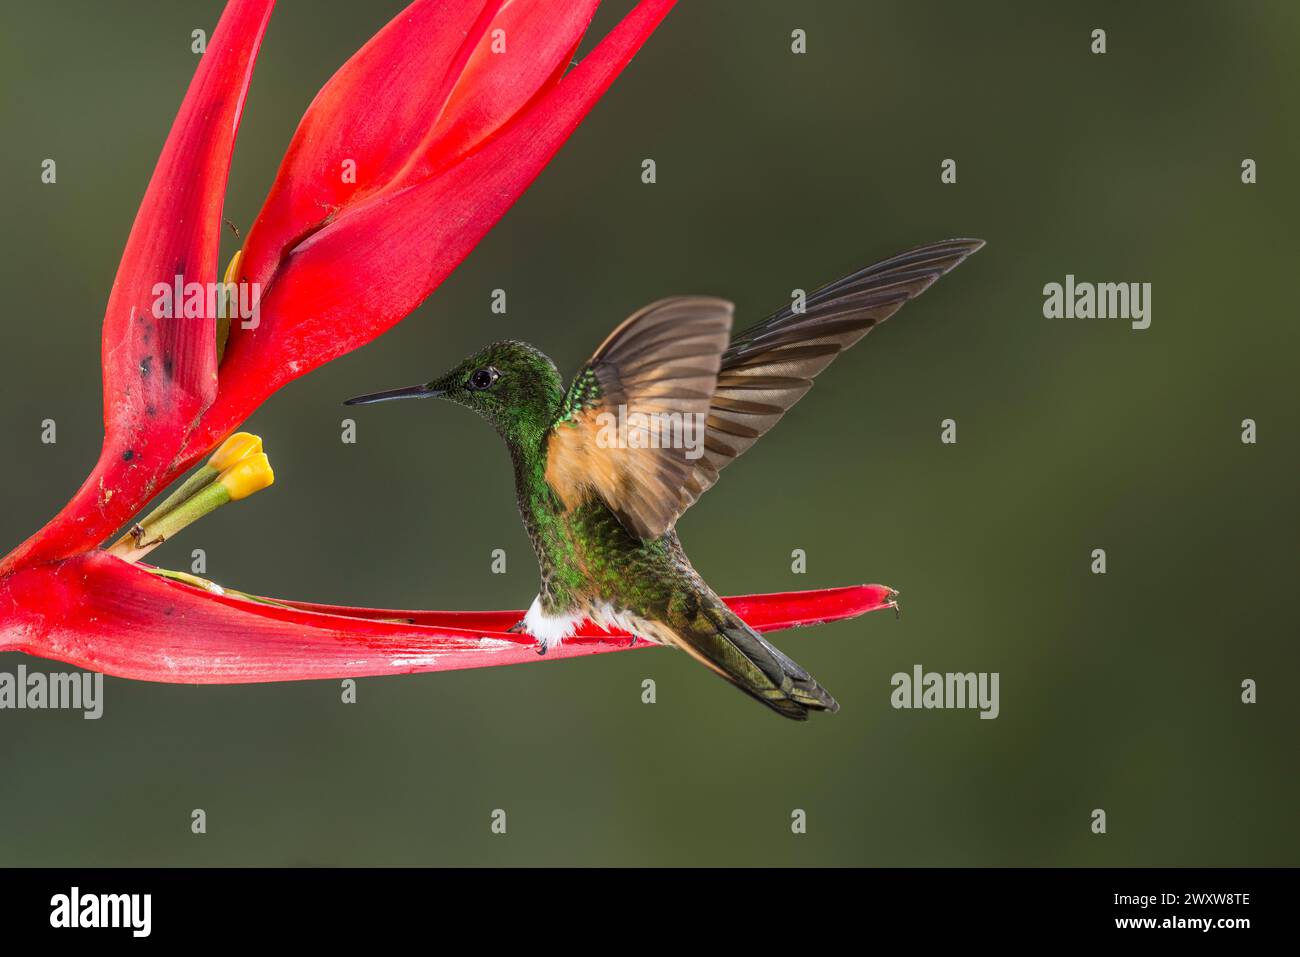 Coronetto dalla coda di bue (Boissonneaua flavescens) che si nutre di un fiore mentre vola, riserva di Bellavista, regione di Tandayapa, Ecuador, Sud America Foto Stock